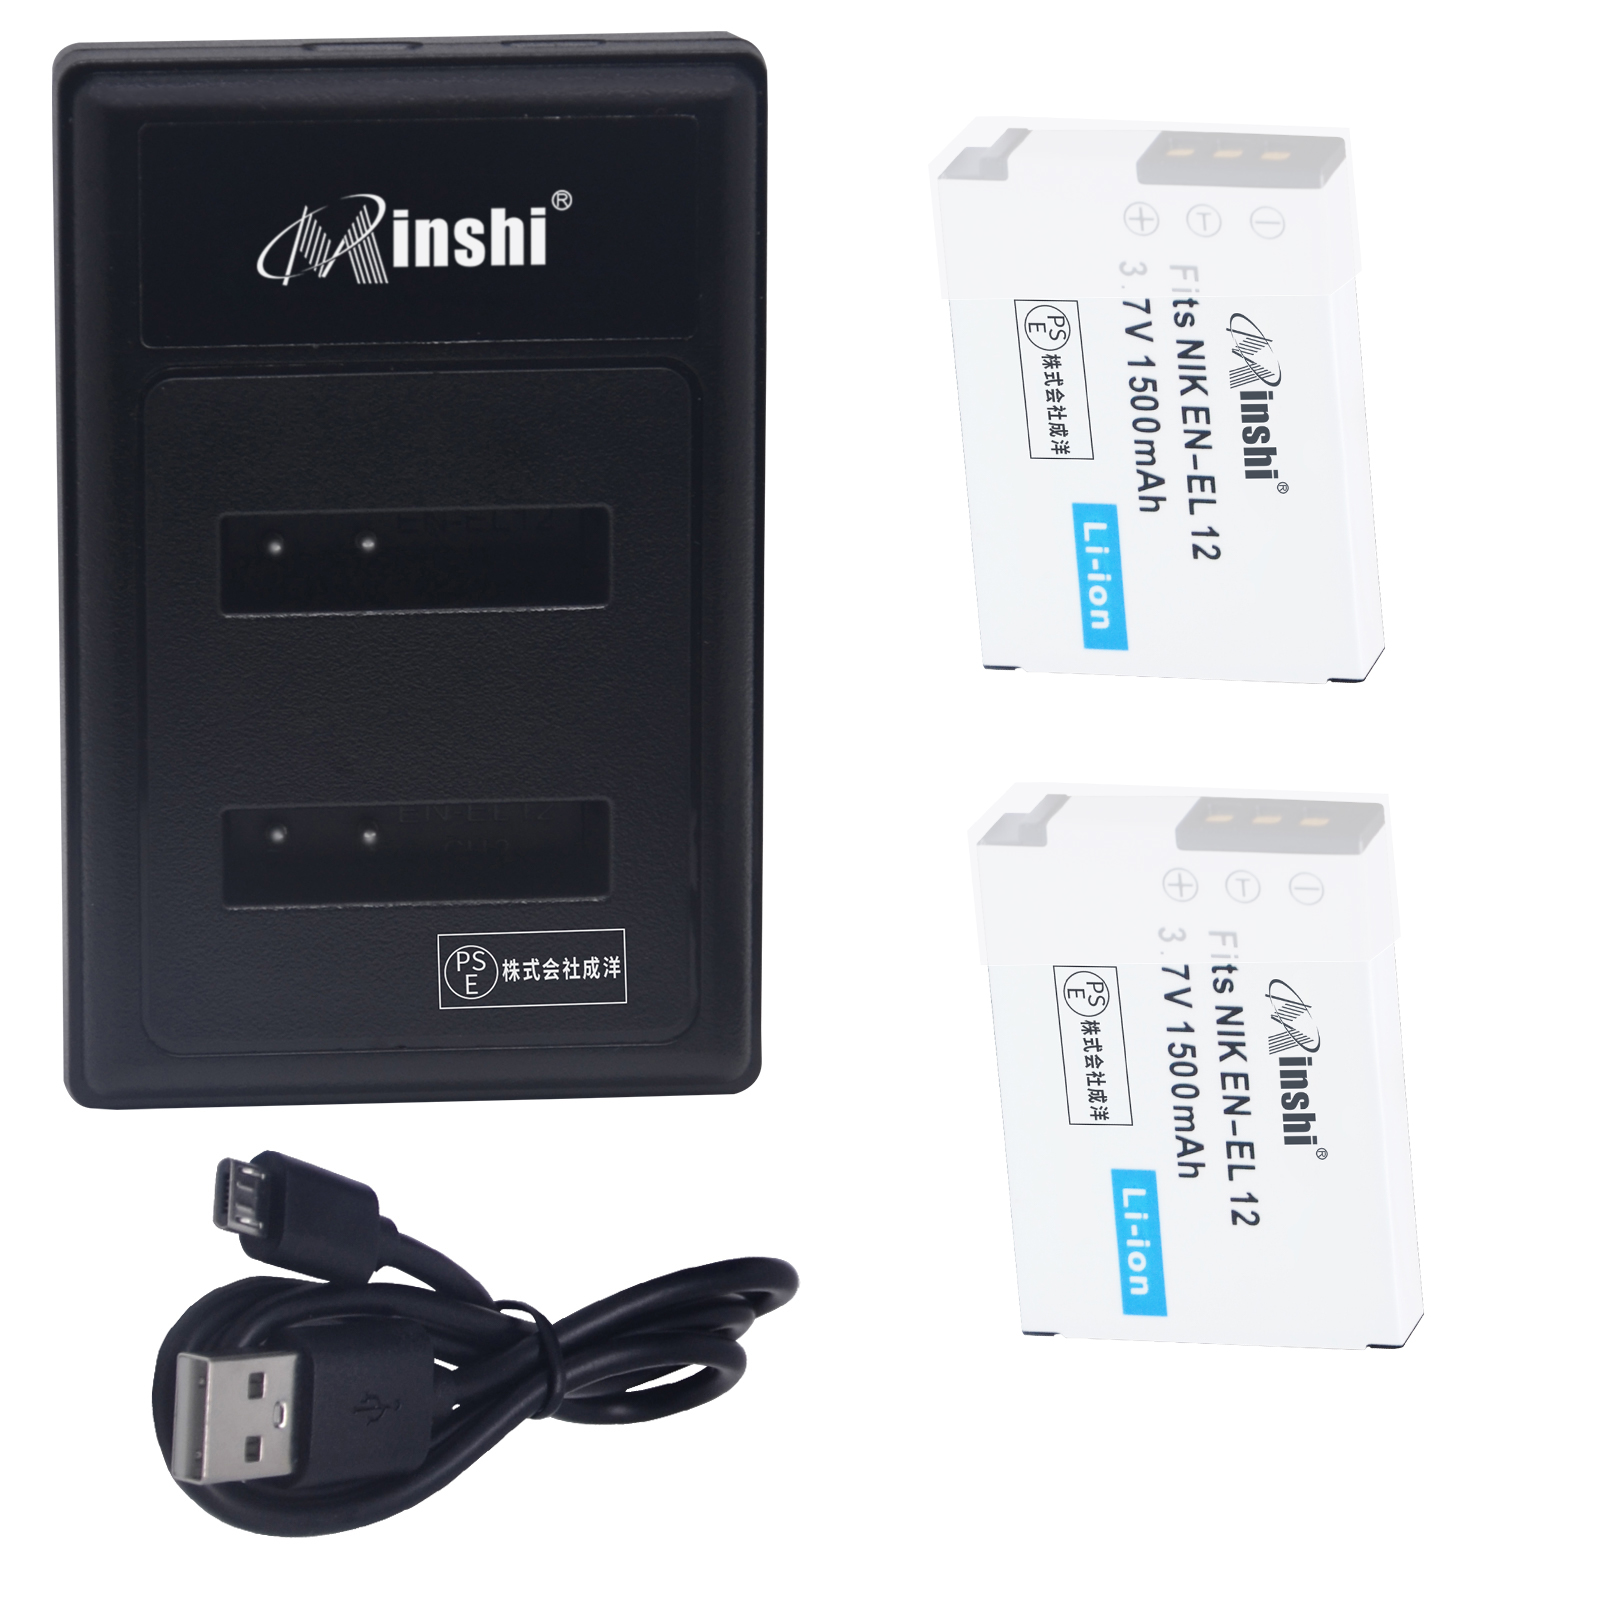 【２個】minshi NIKON COOLPIX AW100 EN-EL12【1500mAh 3.7V】【互換急速USBチャージャー】 高品質交換用バッテリー